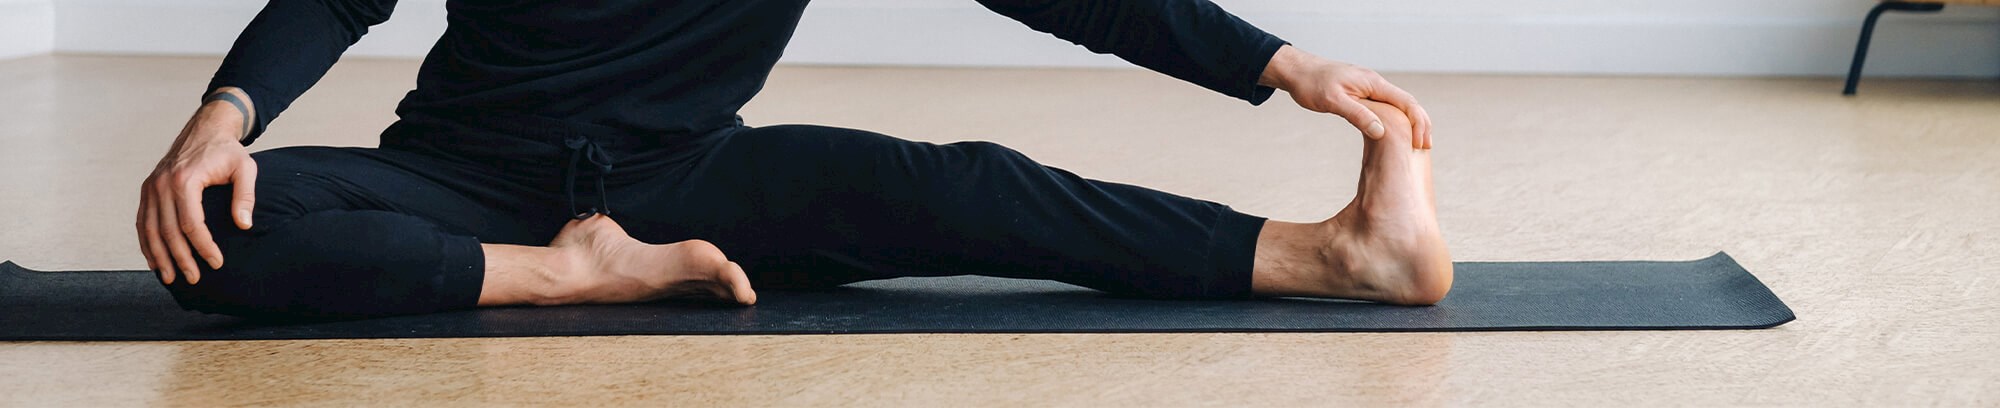 Yoga for mænd - Birthe Olsson hos FOF Vest